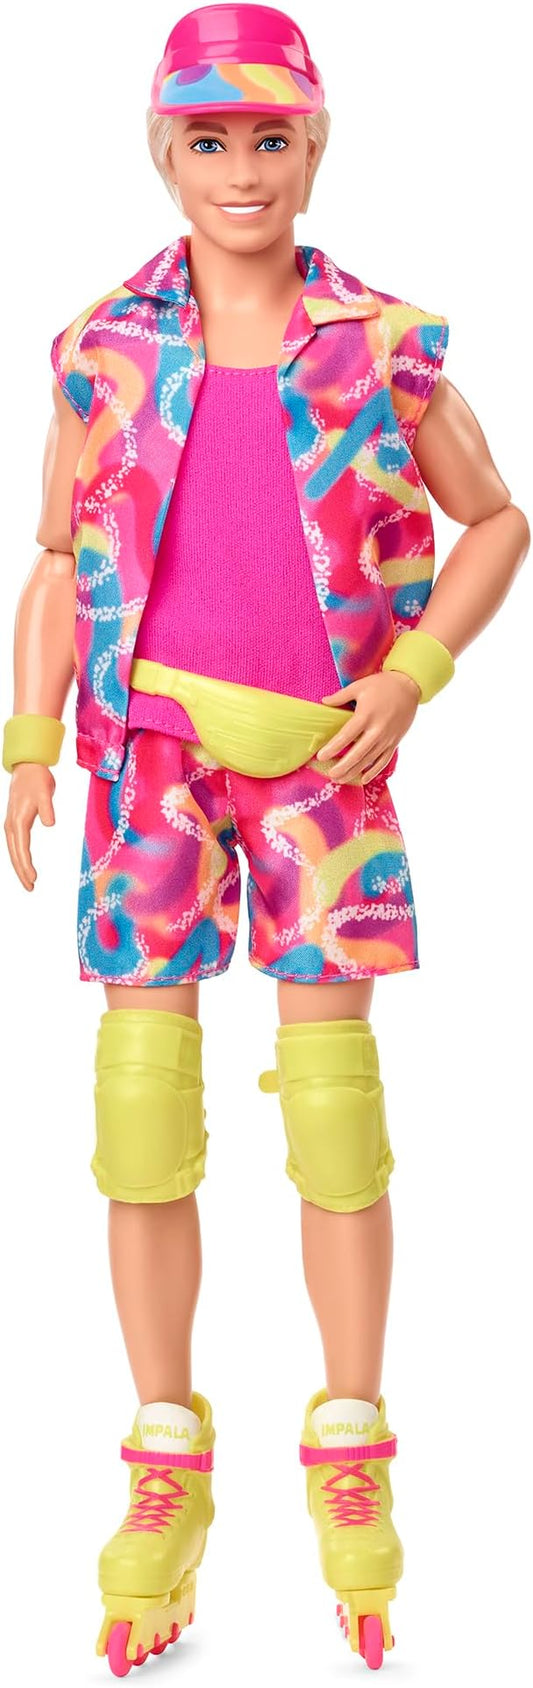 Barbie Ken Doll